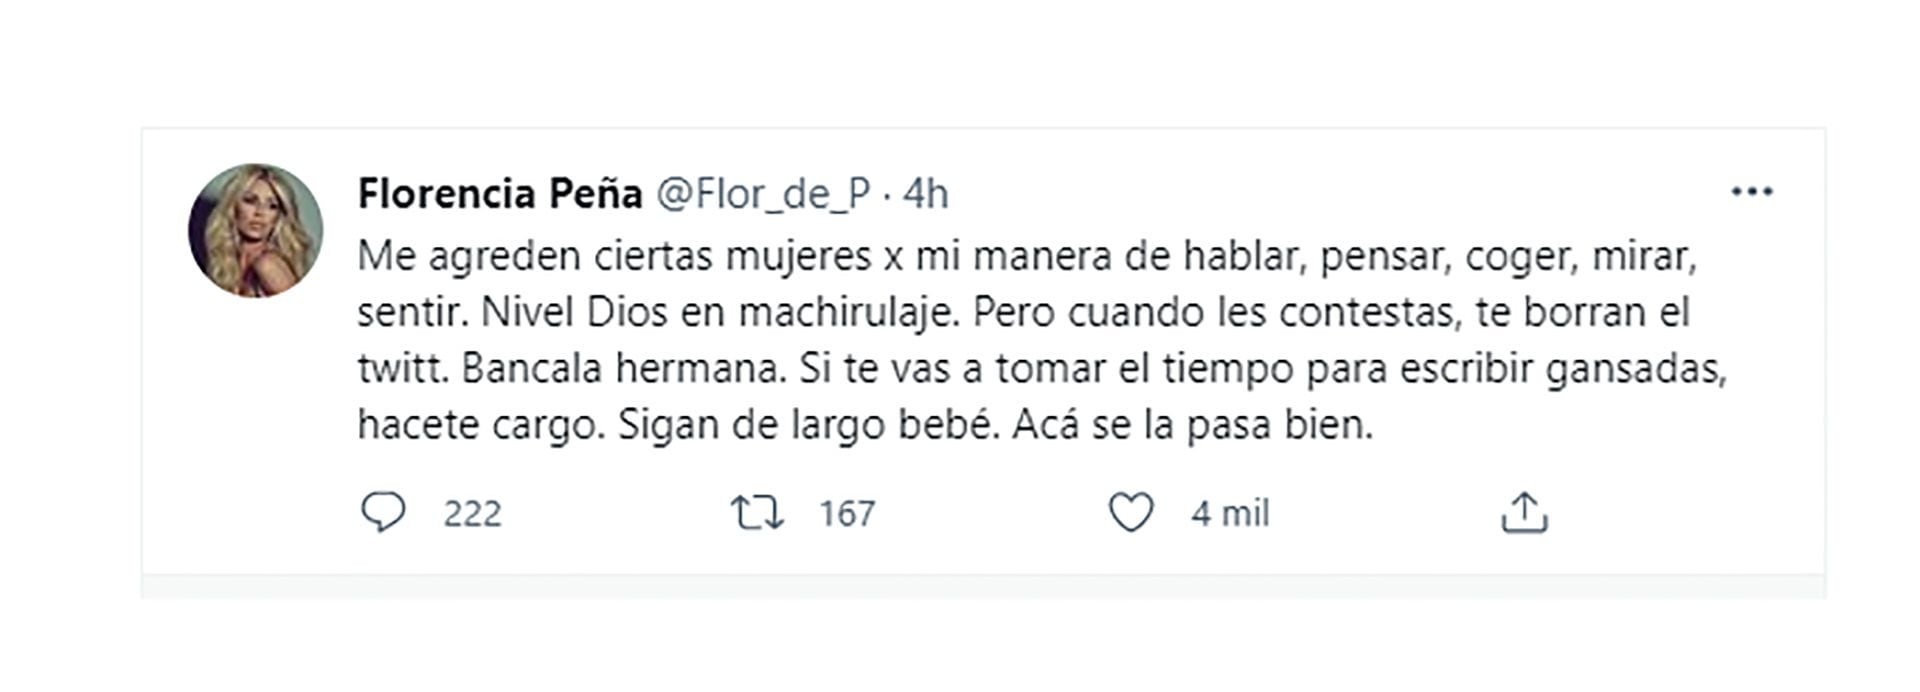 El tuit de Florencia Peña